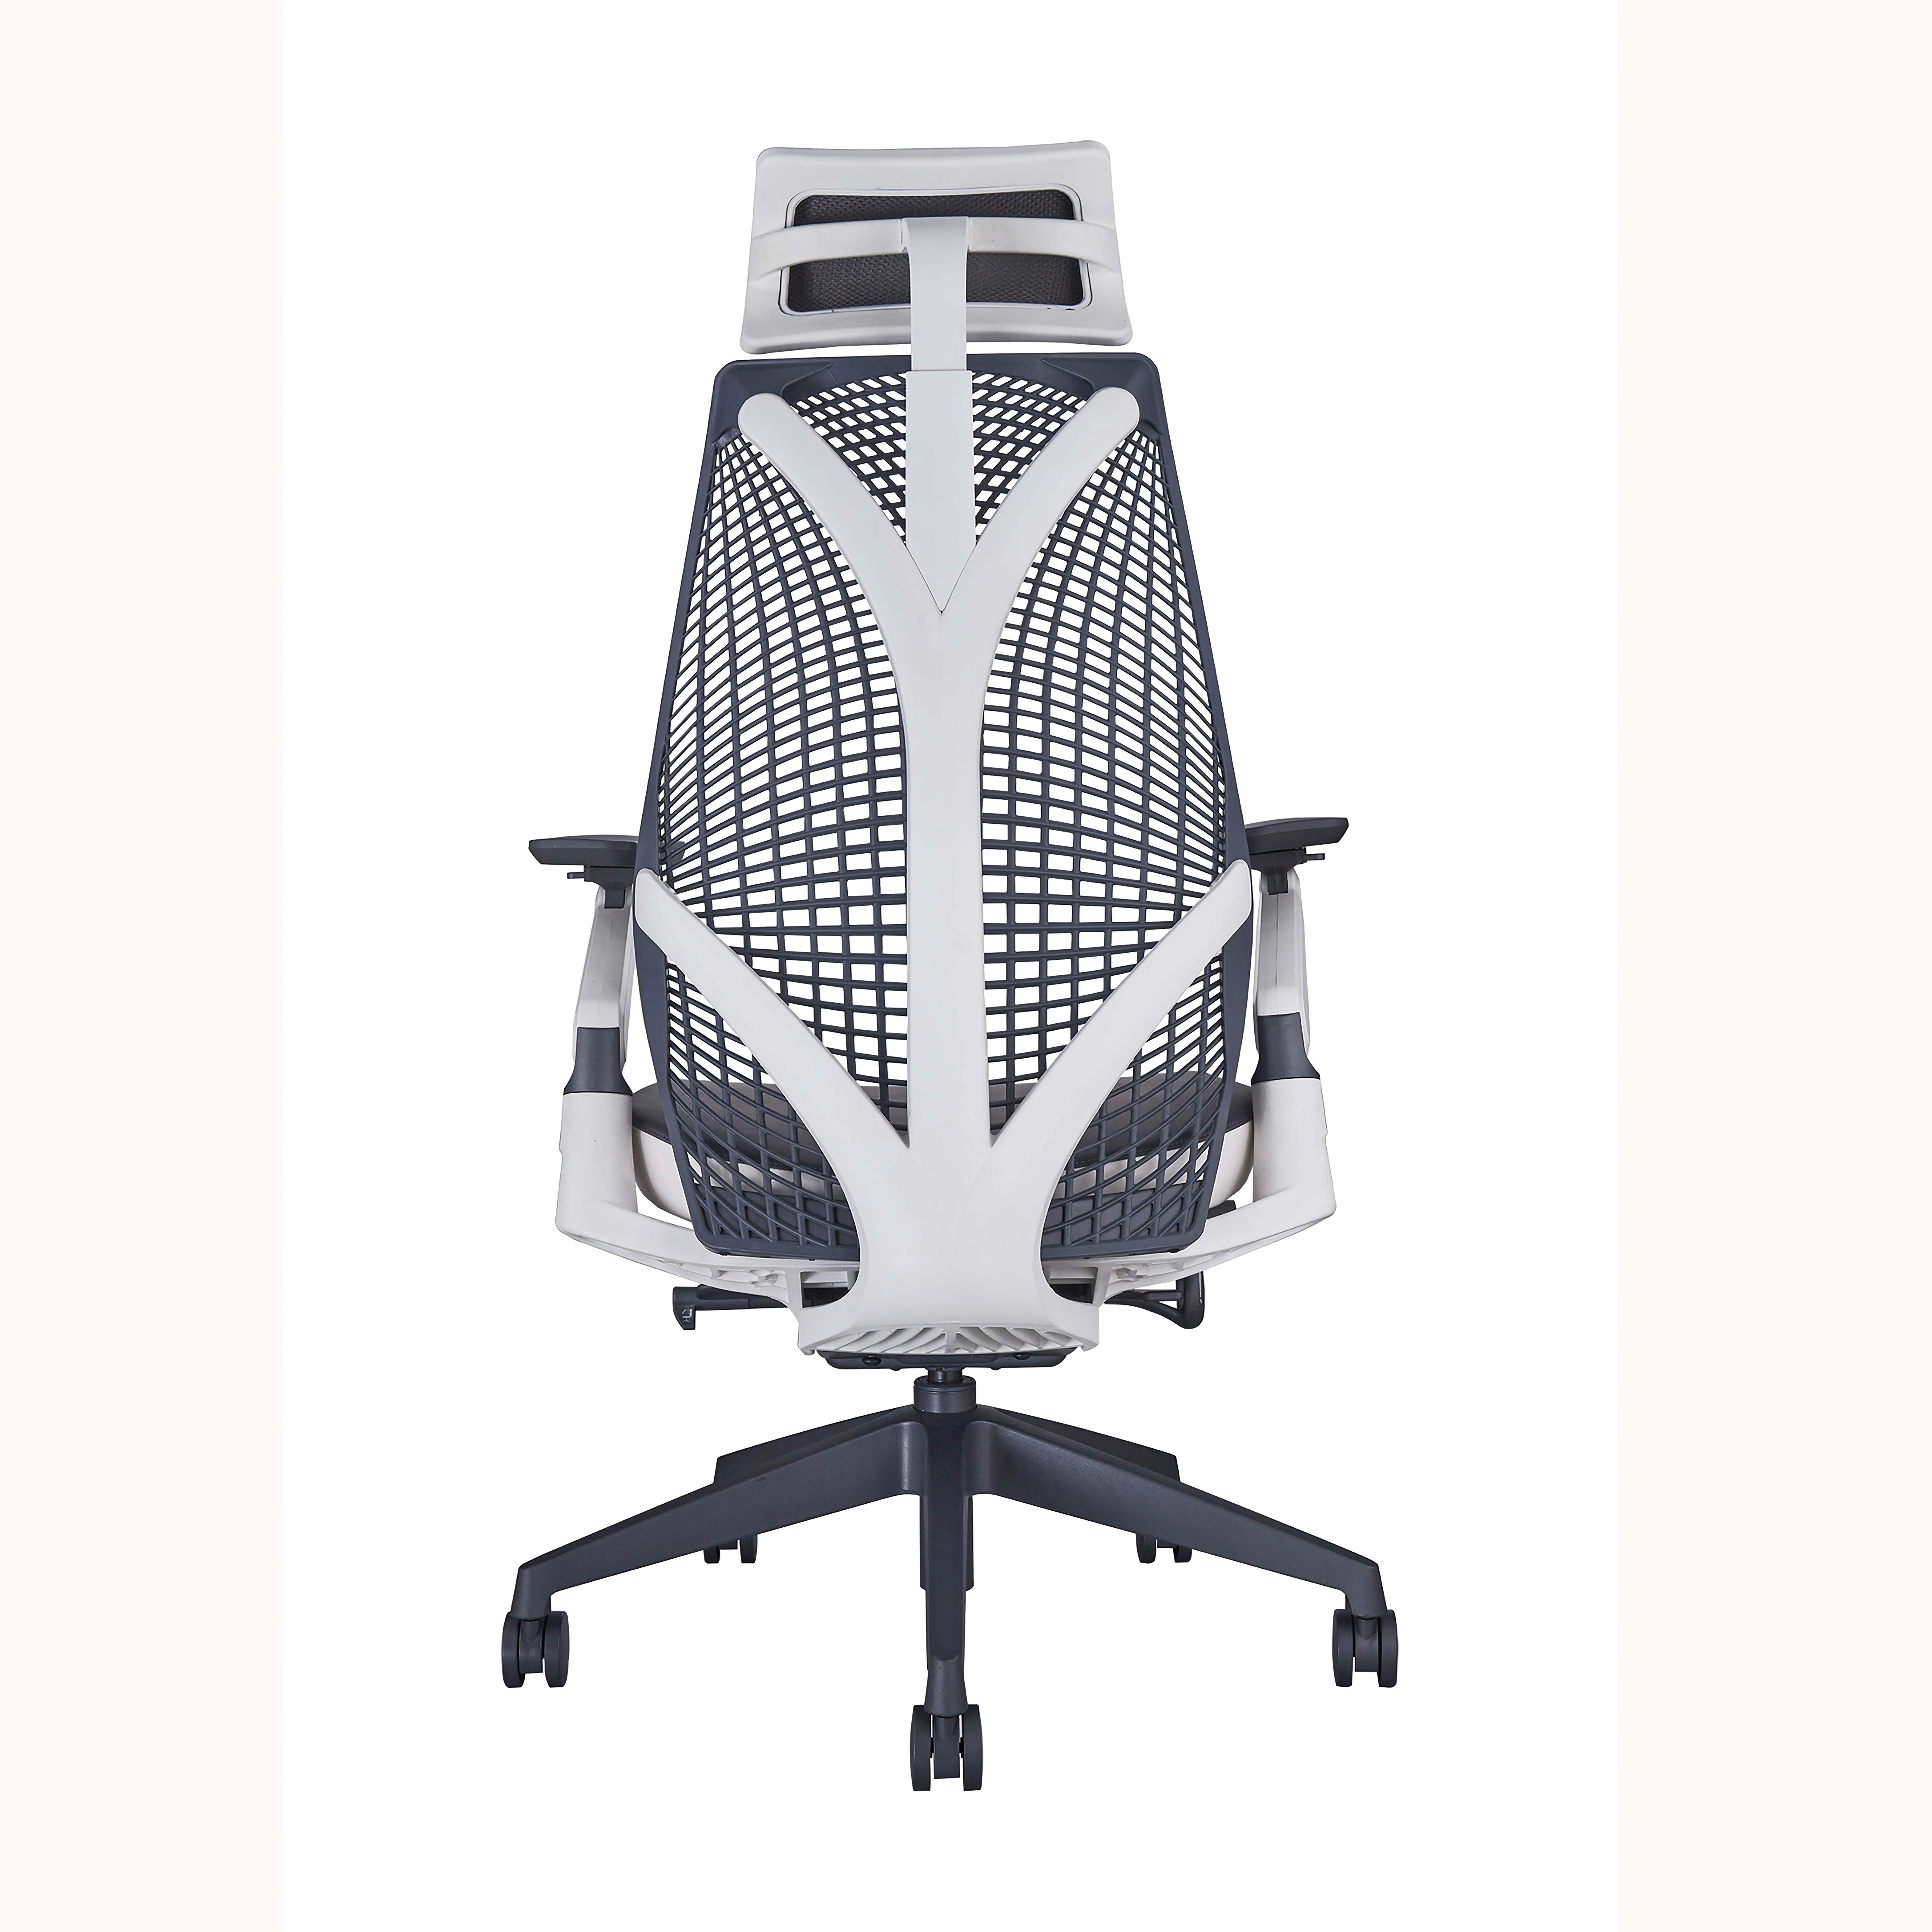 Foshan 상업적인 가구 TPEE 연약한 뒤 인간 환경 공학 의자를 가진 잘 디자인된 사무실 의자 고밀도 거품 직물